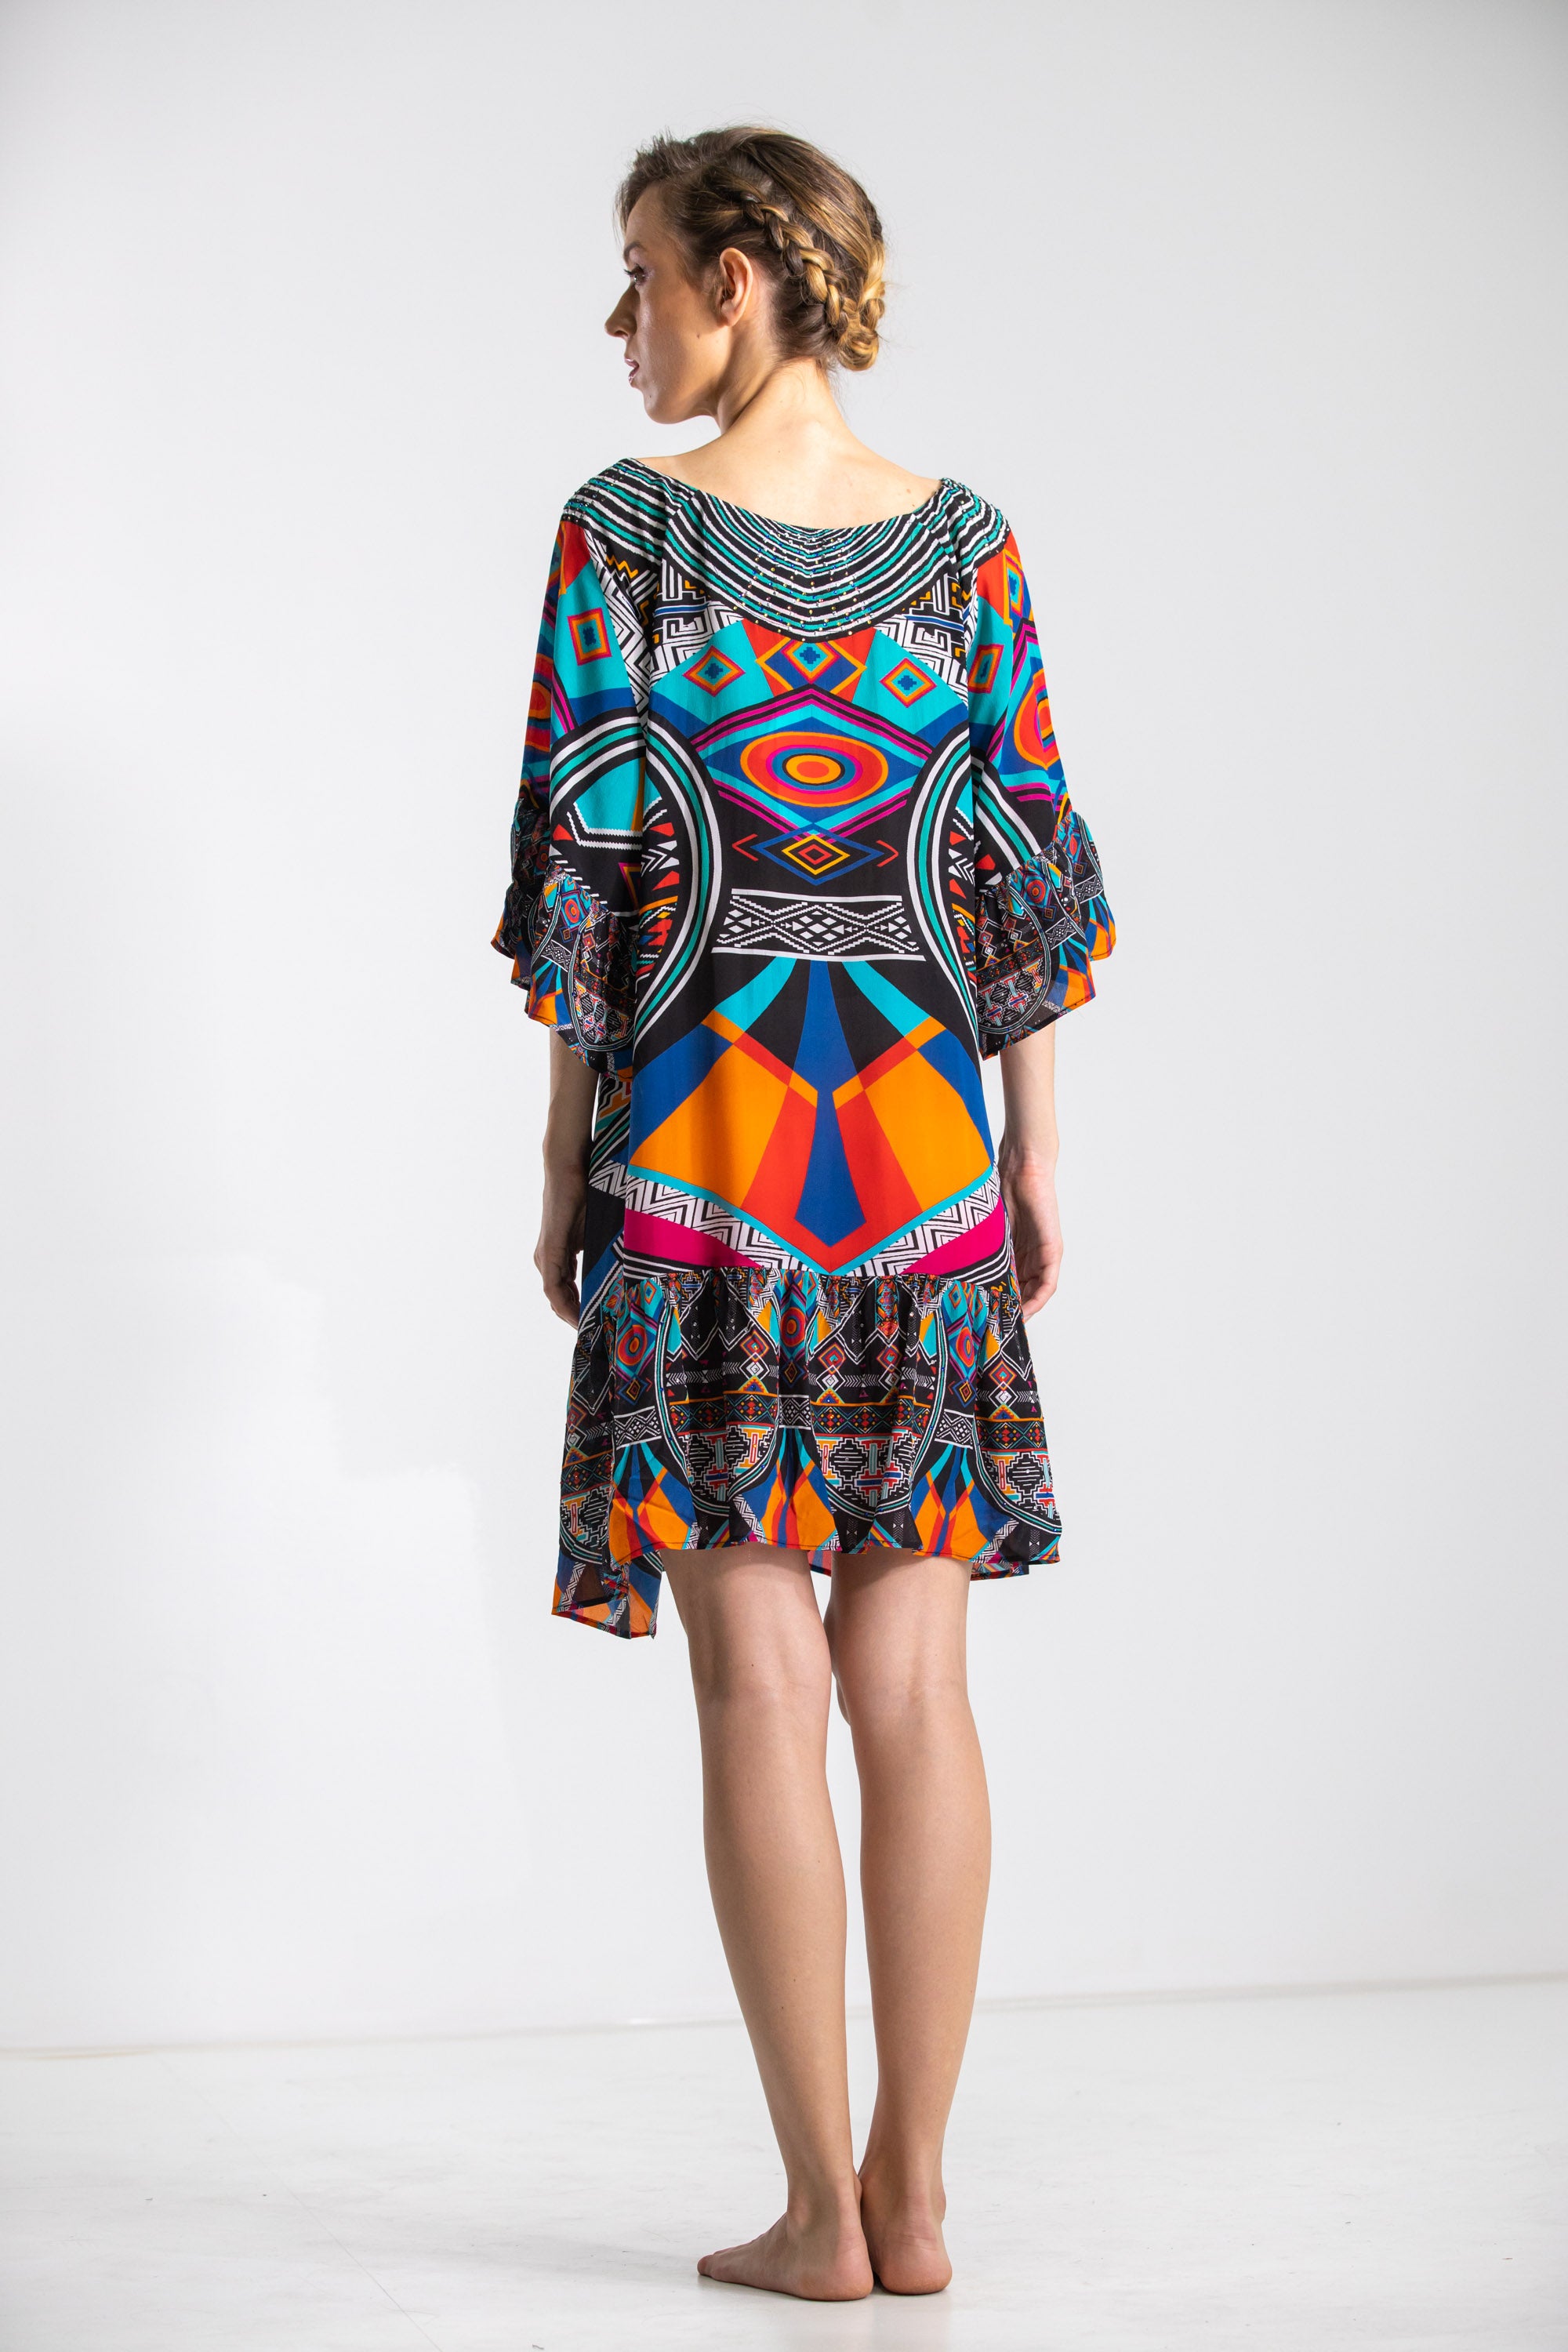 HIMBA AFRICANA - GYPSY DRESS